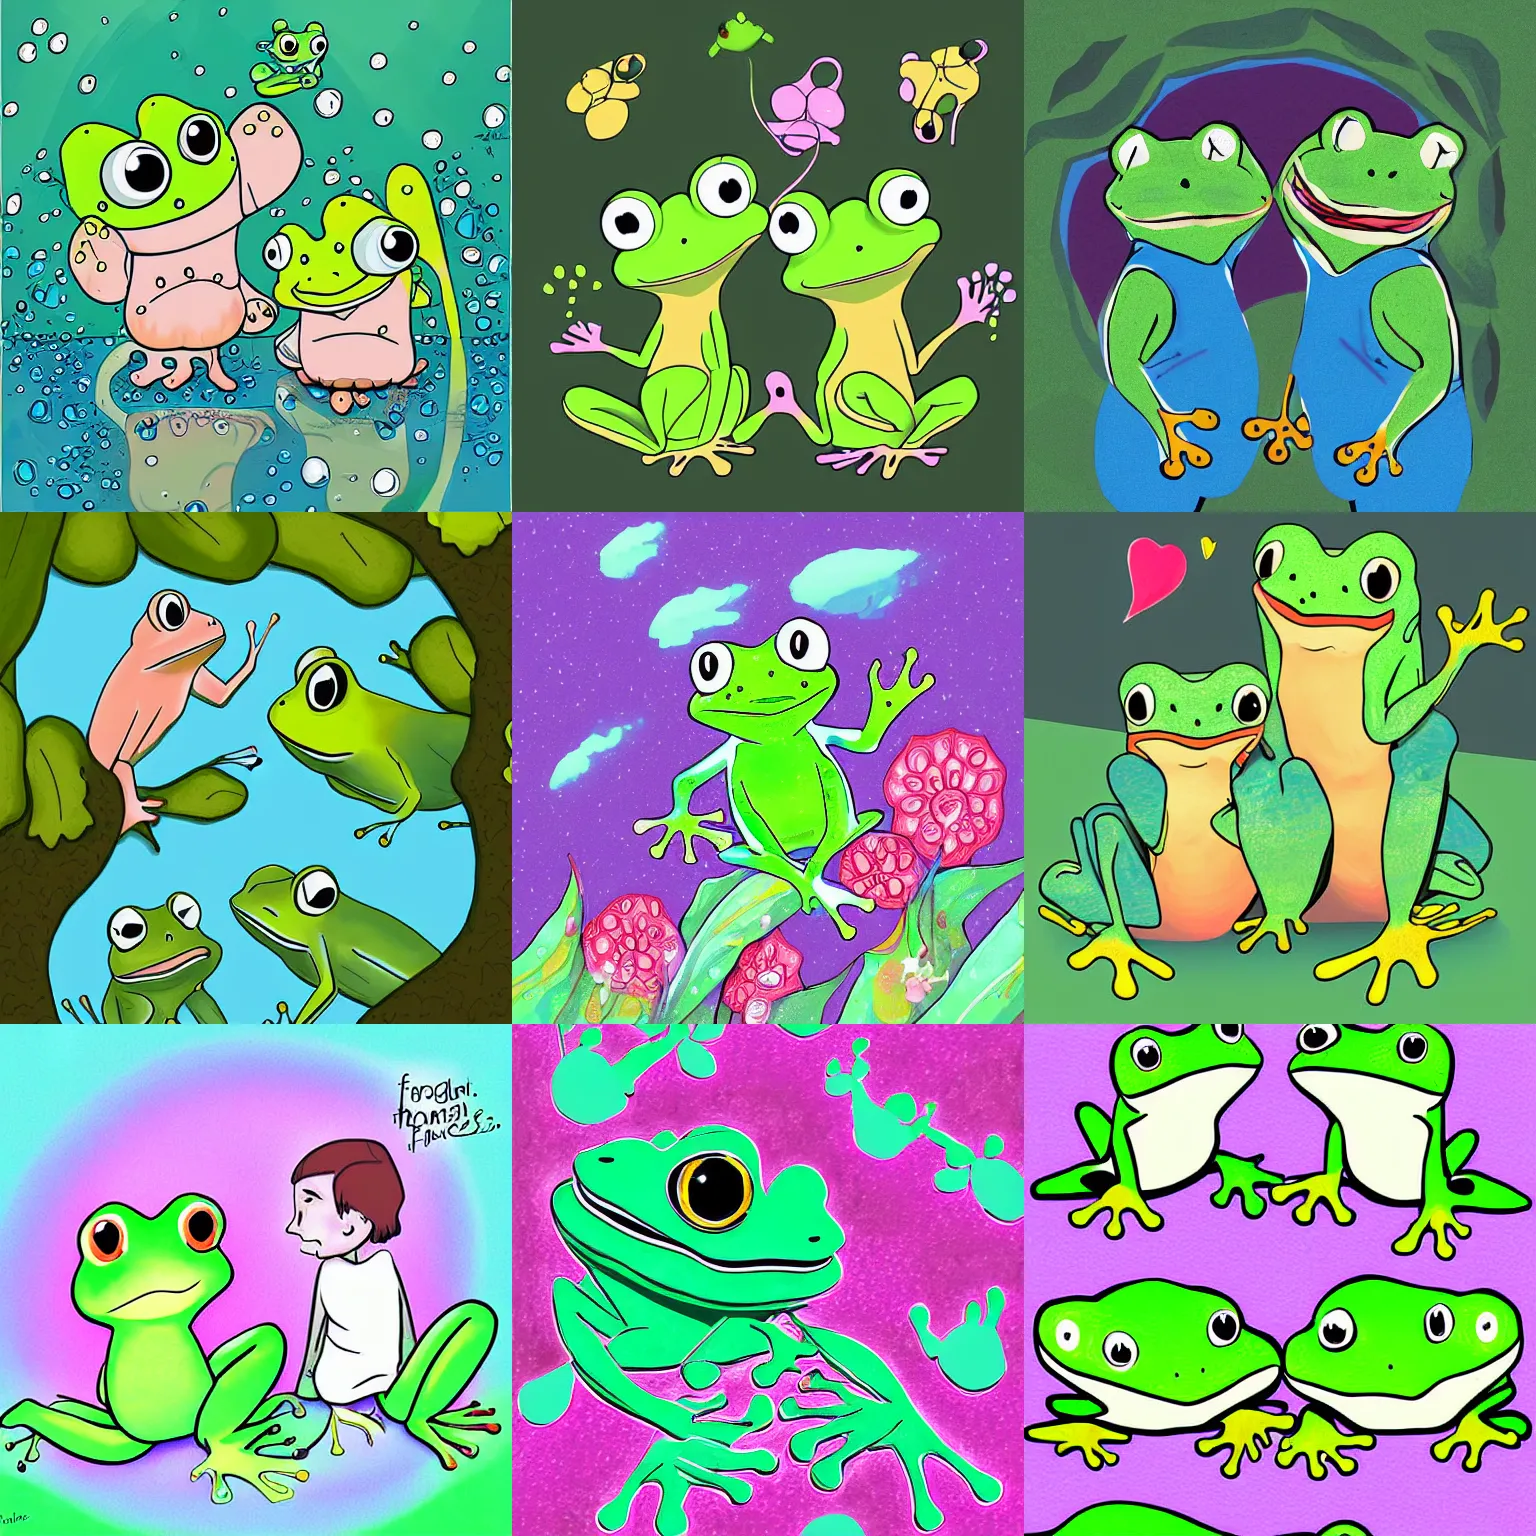 Prompt: frog friends, digital art, cute, shoujo